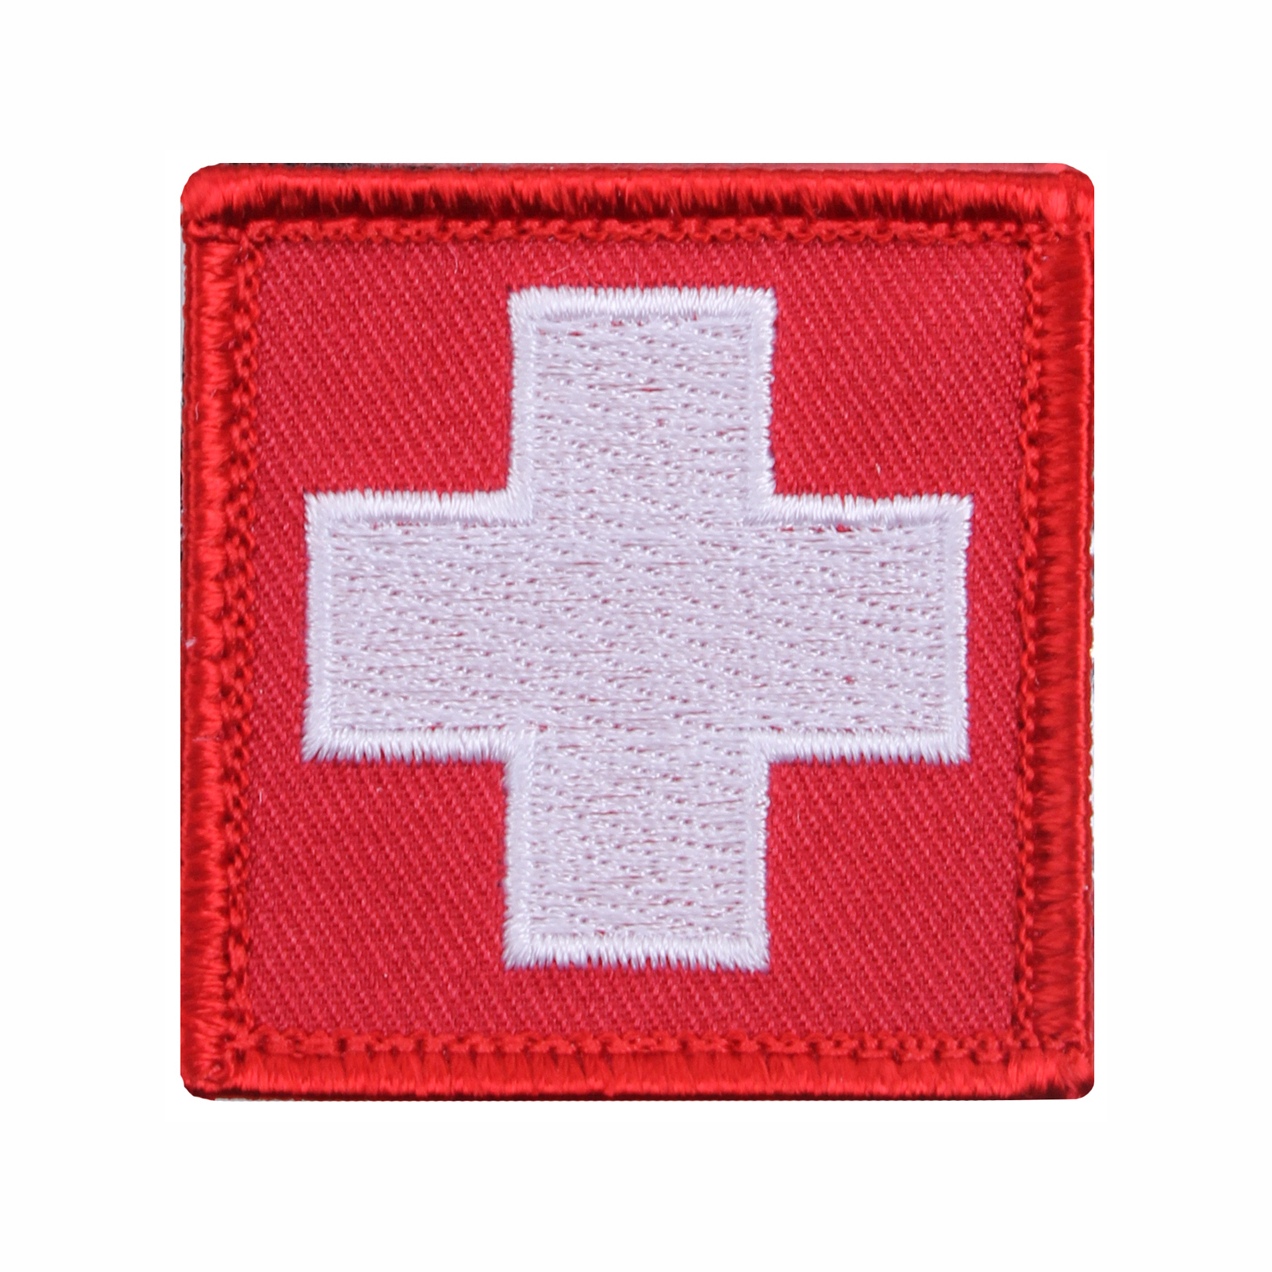 nášivka červený kříž IFAK red cross medical zdravotník 5x5cm